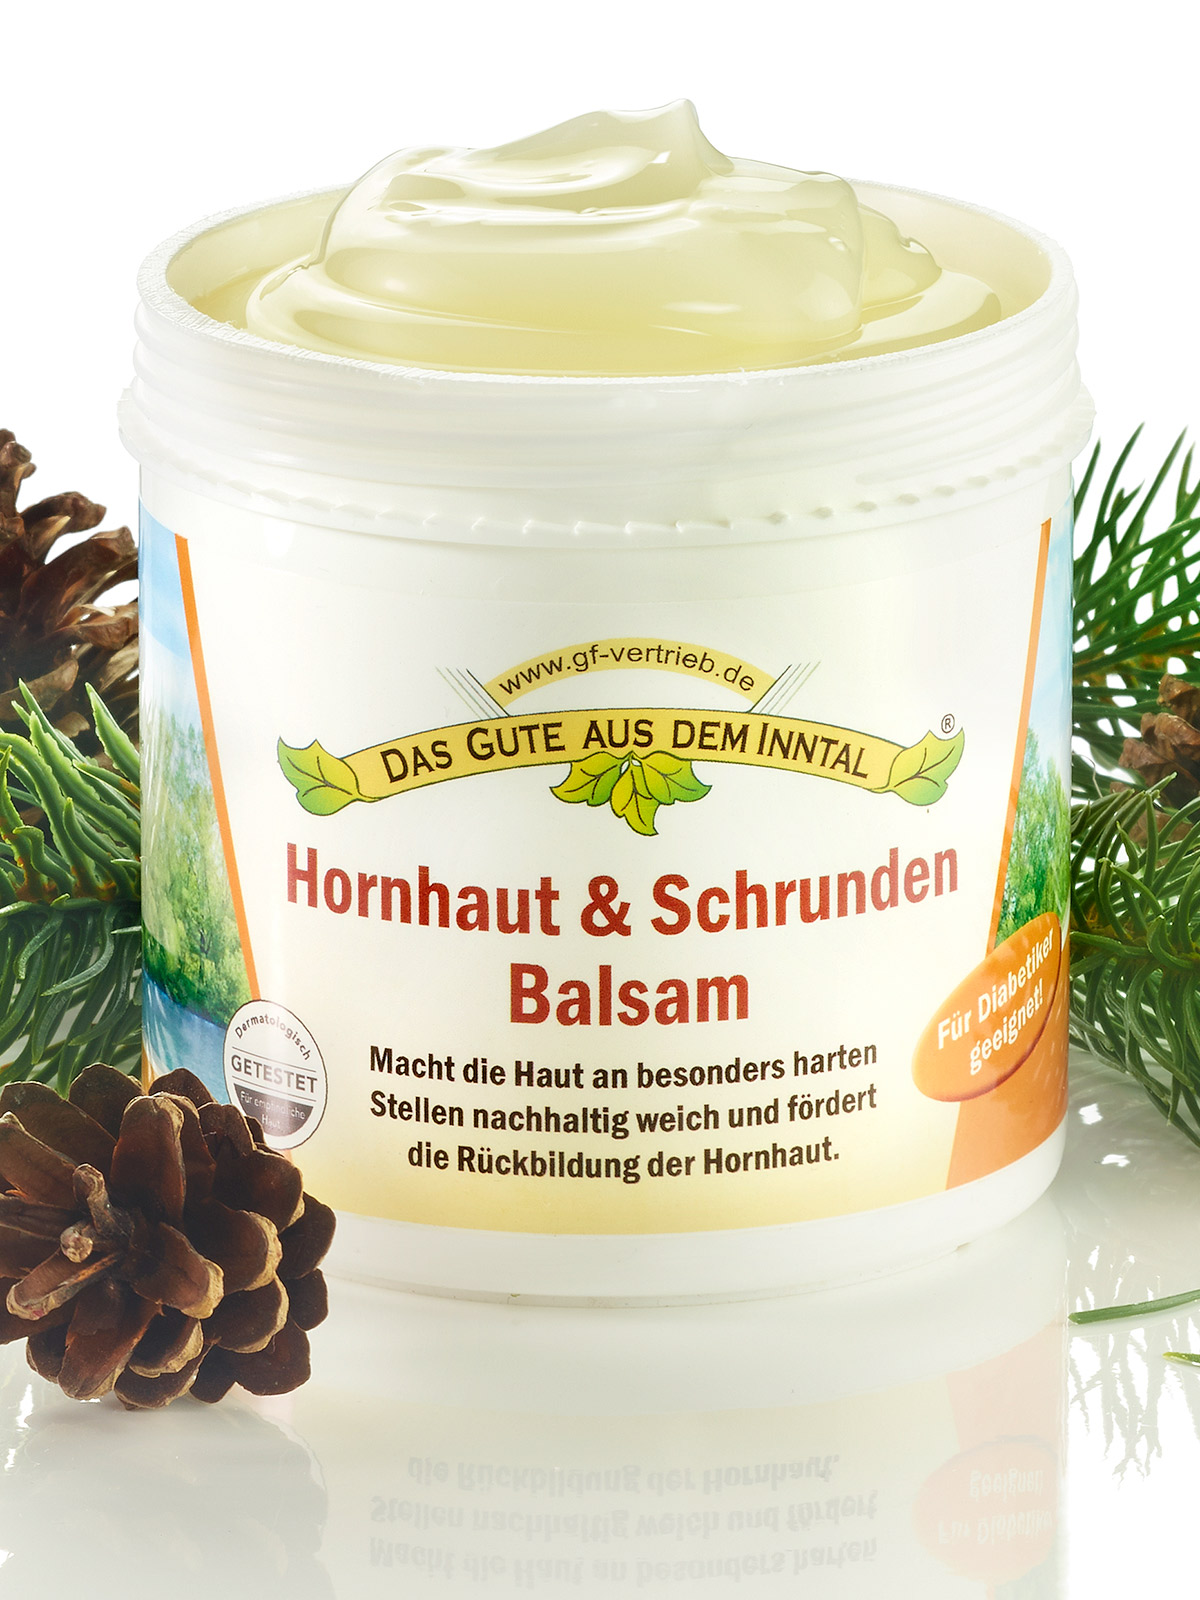 Hornhaut & Schrunden Balsam